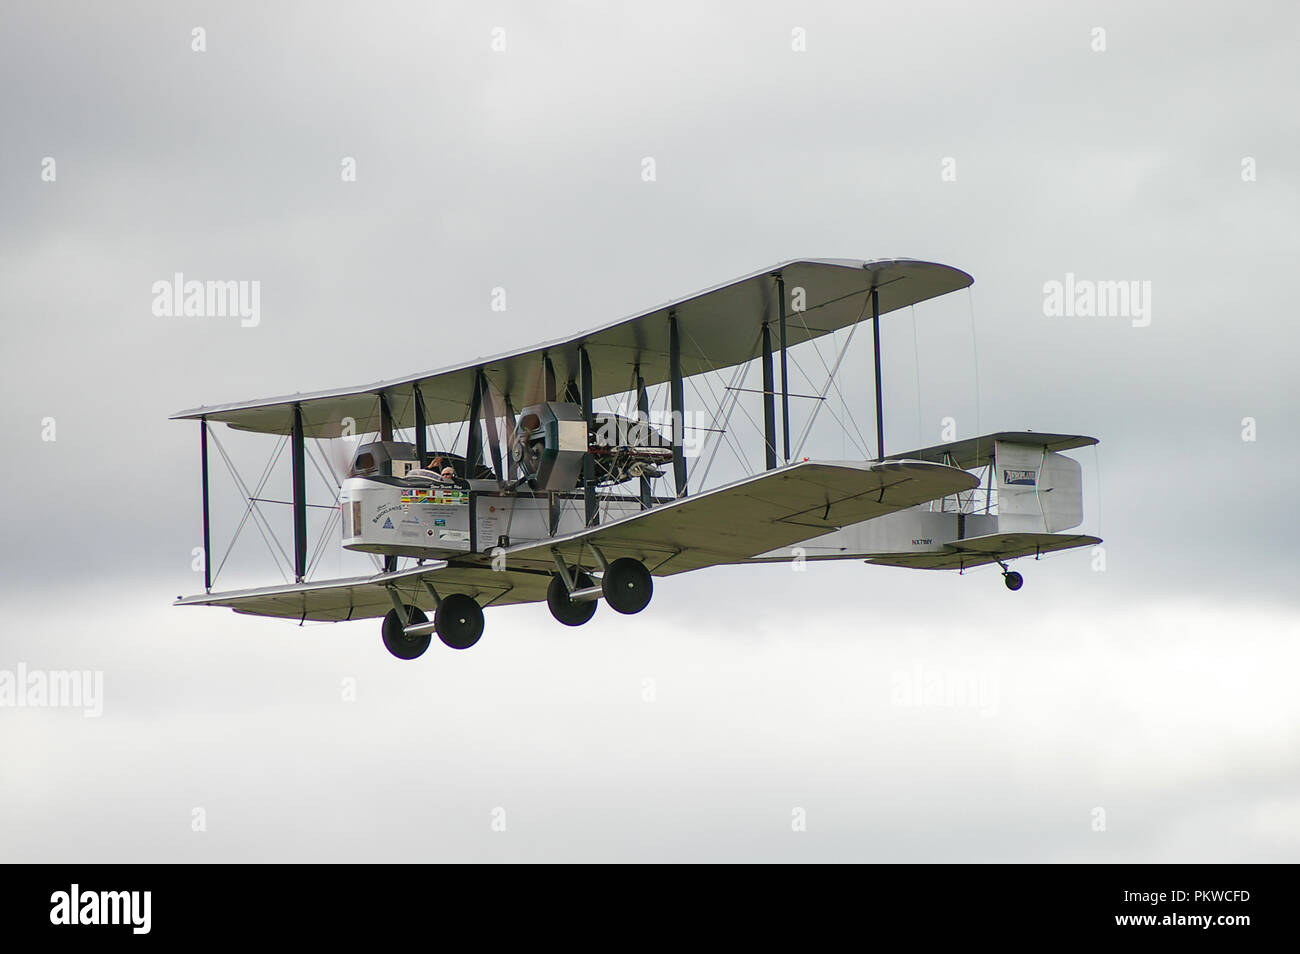 Vickers Vimy avion bombardier lourd britannique, biplan de la première Guerre mondiale, Grande Guerre, première Guerre mondiale. Recréation du vol Alcock & Brown Atlantic Banque D'Images